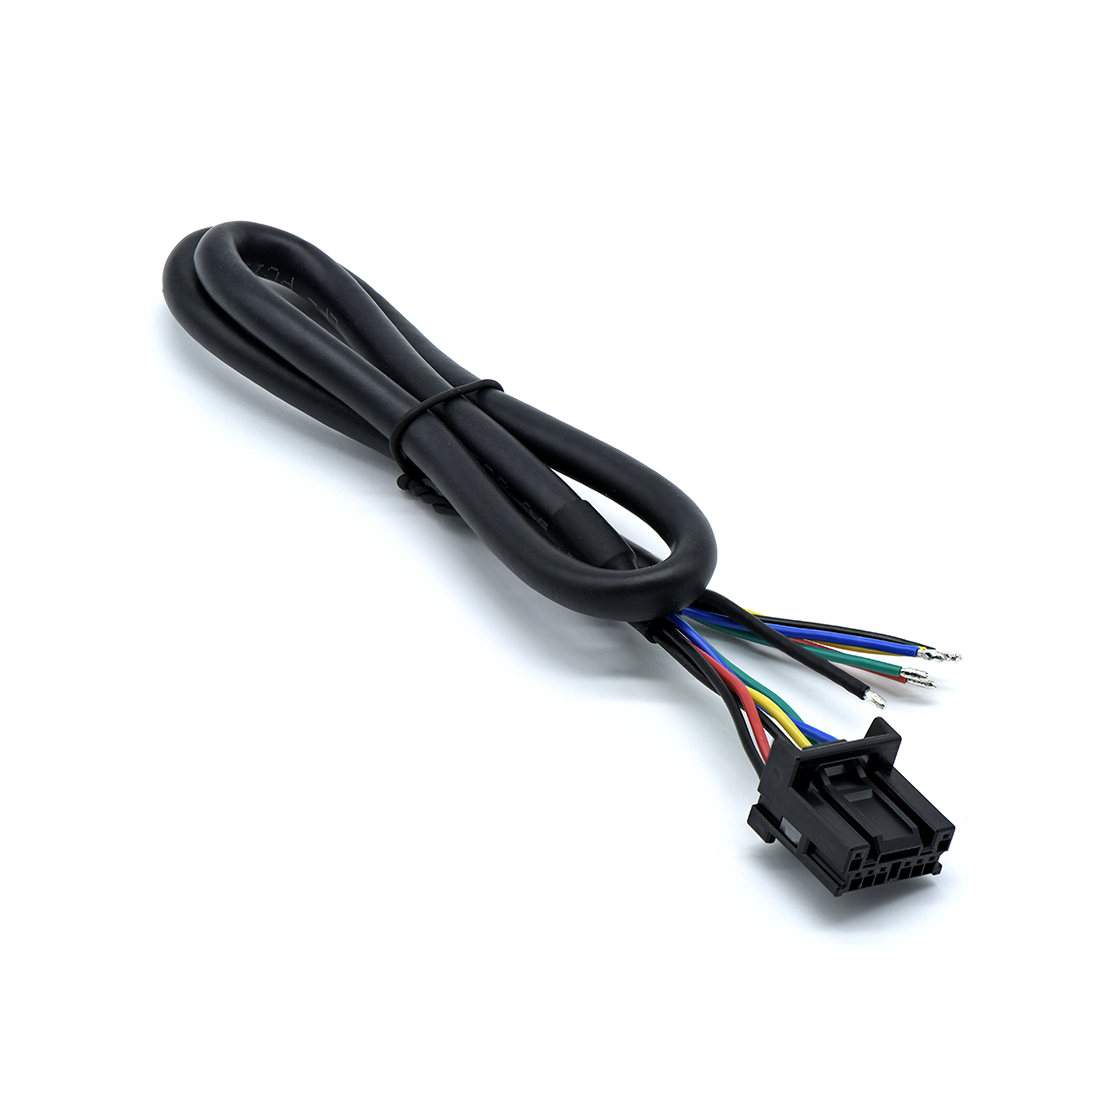 多芯电缆组件：08CPT-B-2A间距2.0mm 黑色 TO 尾部沾锡L=365mm